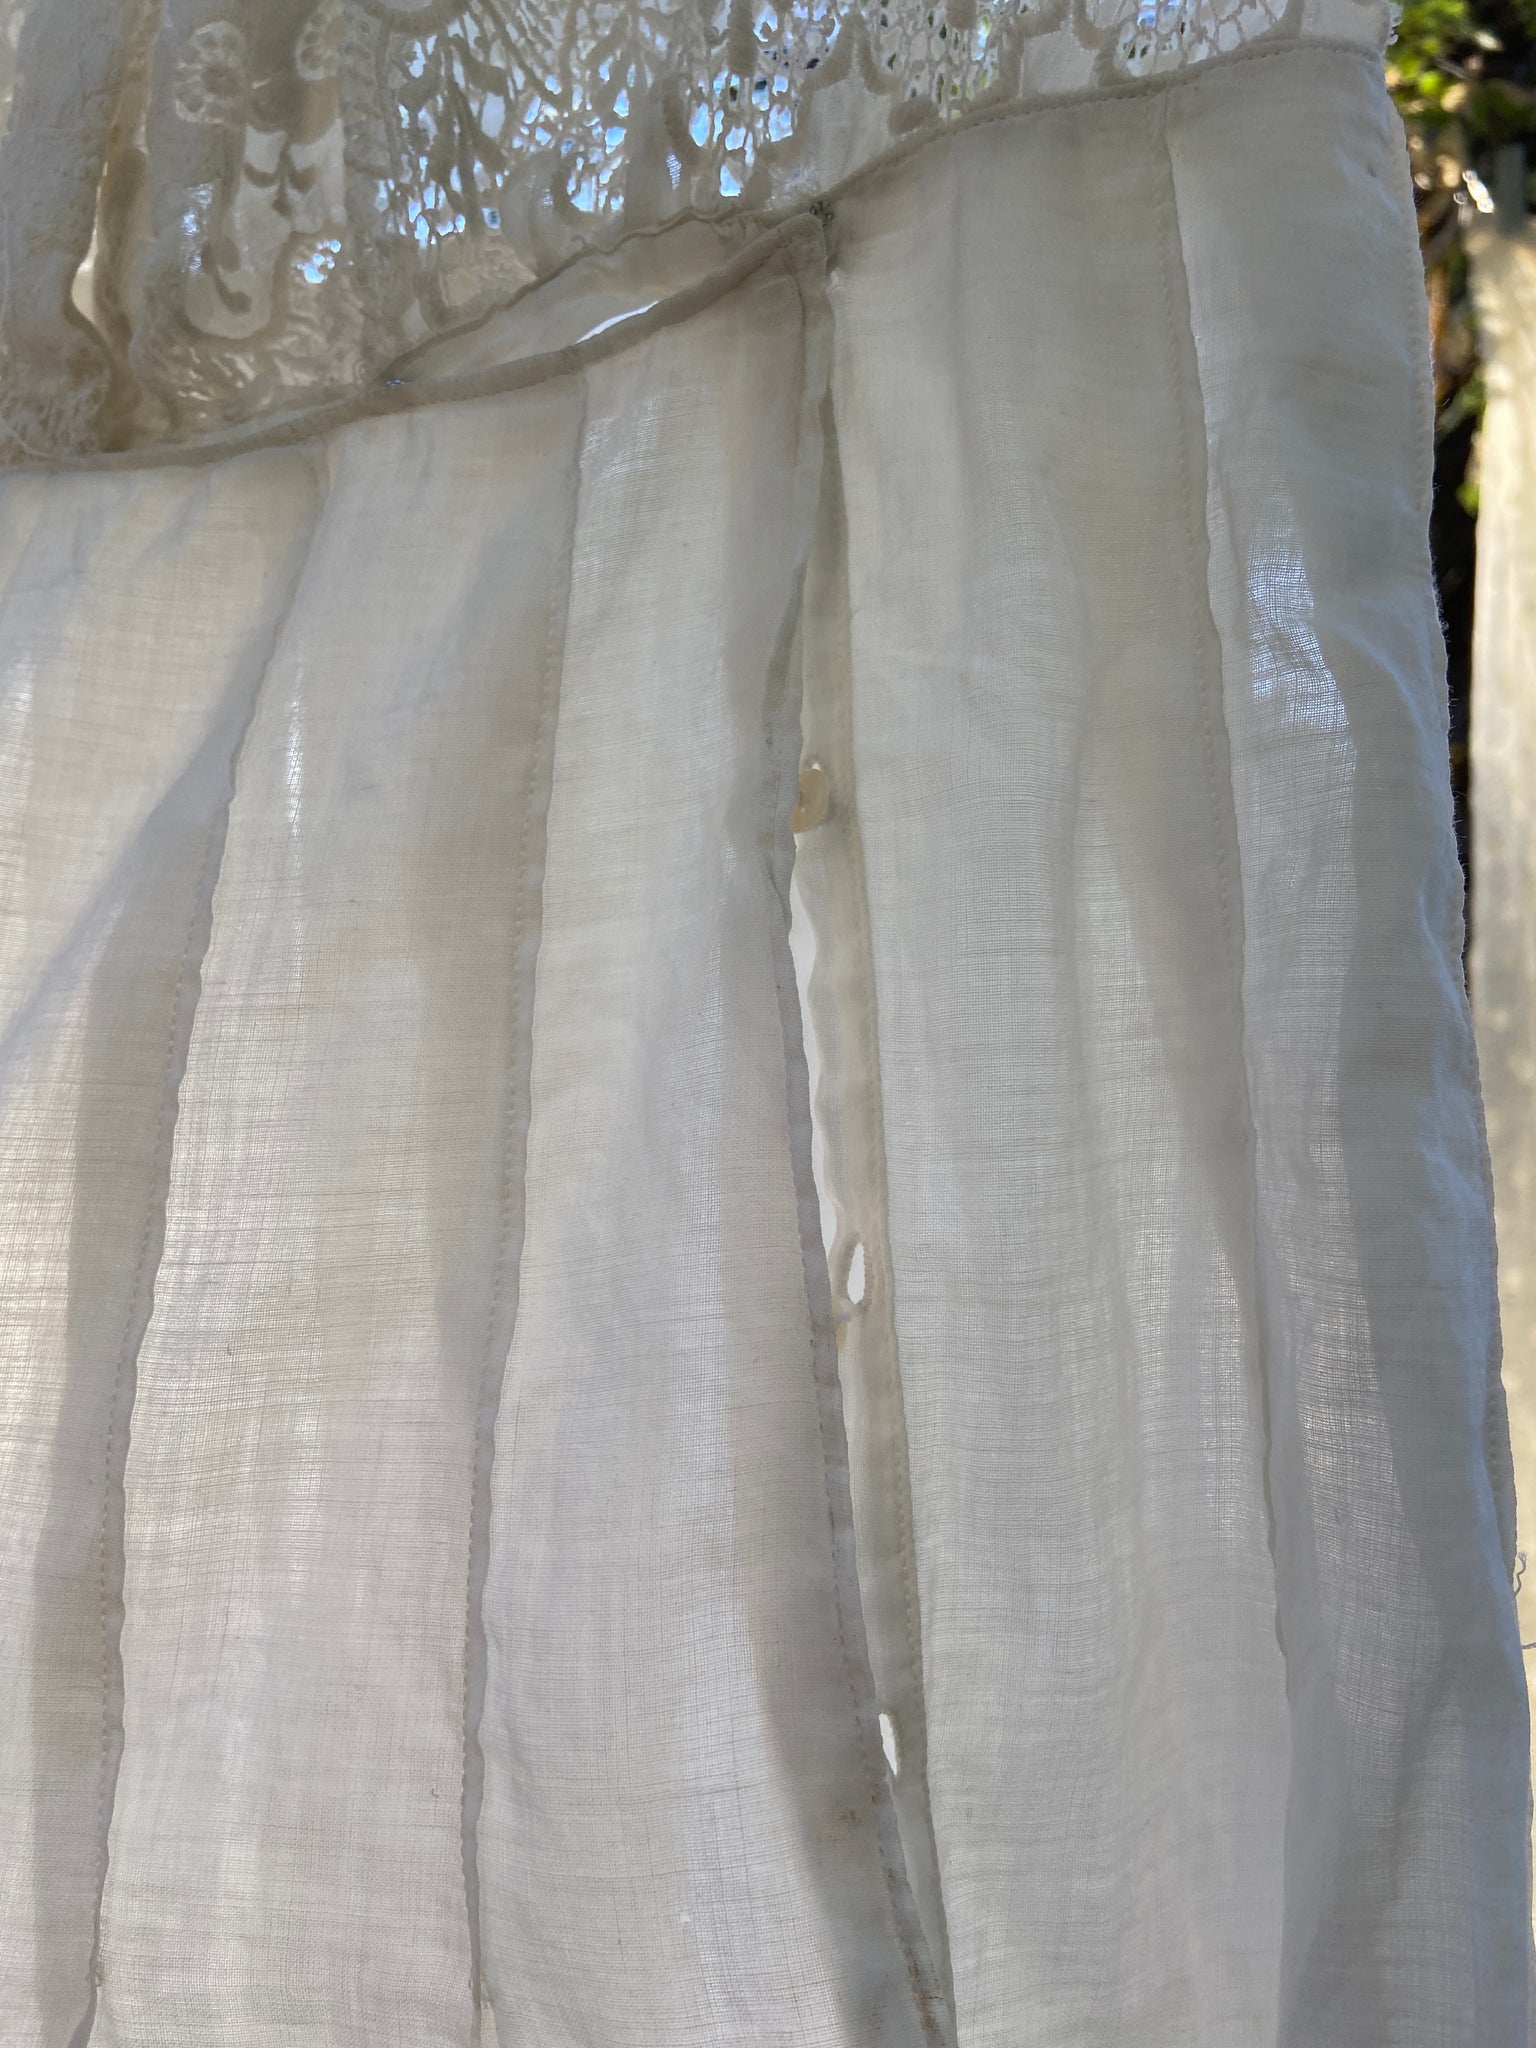 Edwardian White Work Cotton Lawn Dress